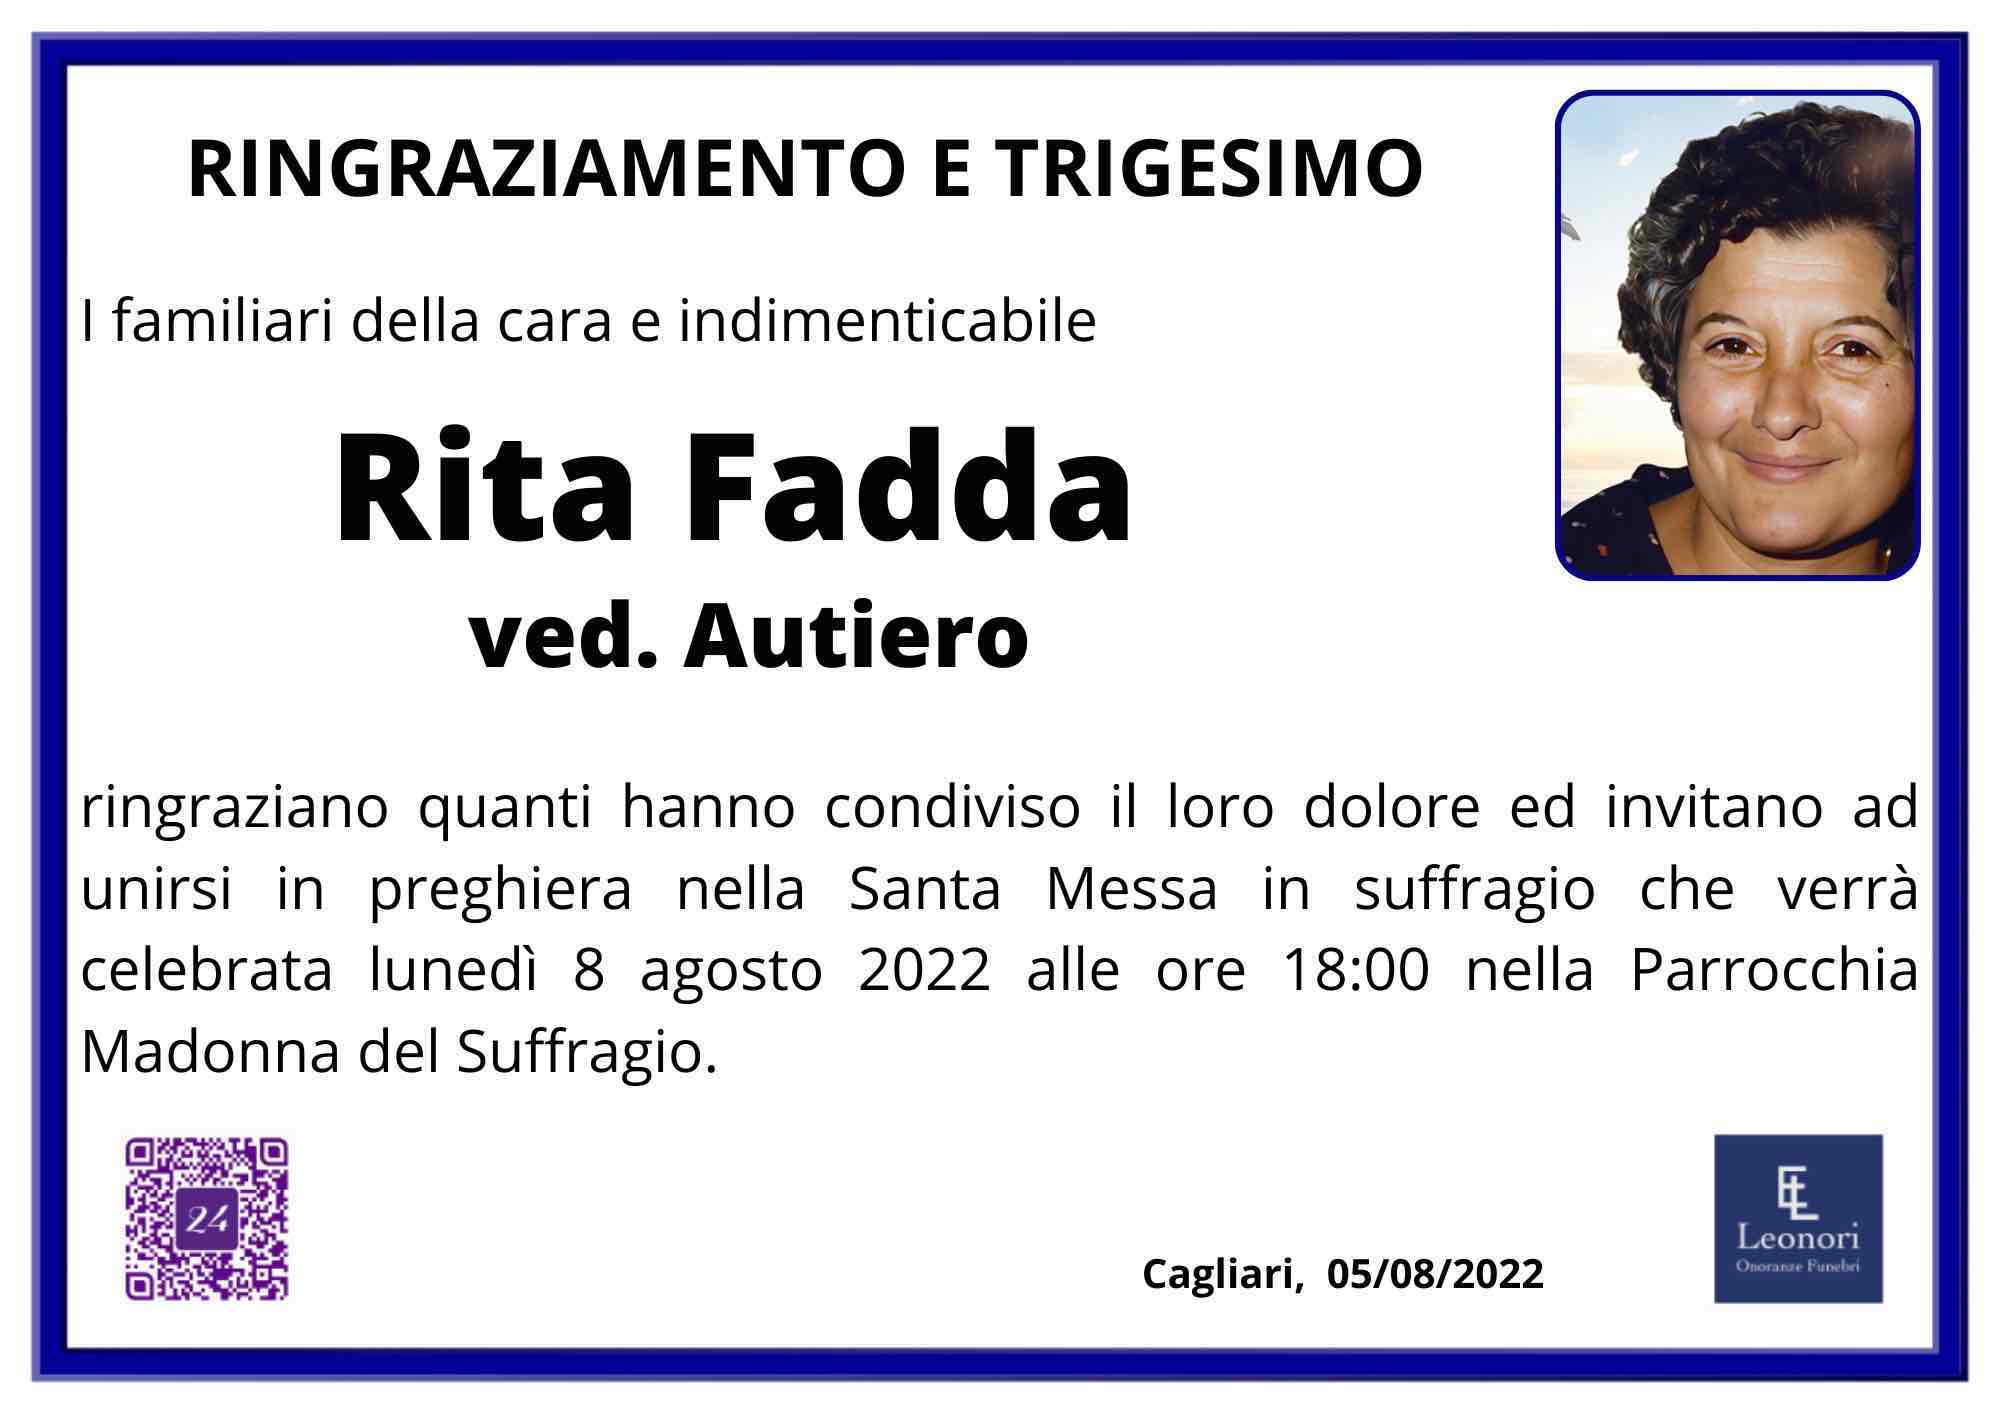 Rita Fadda